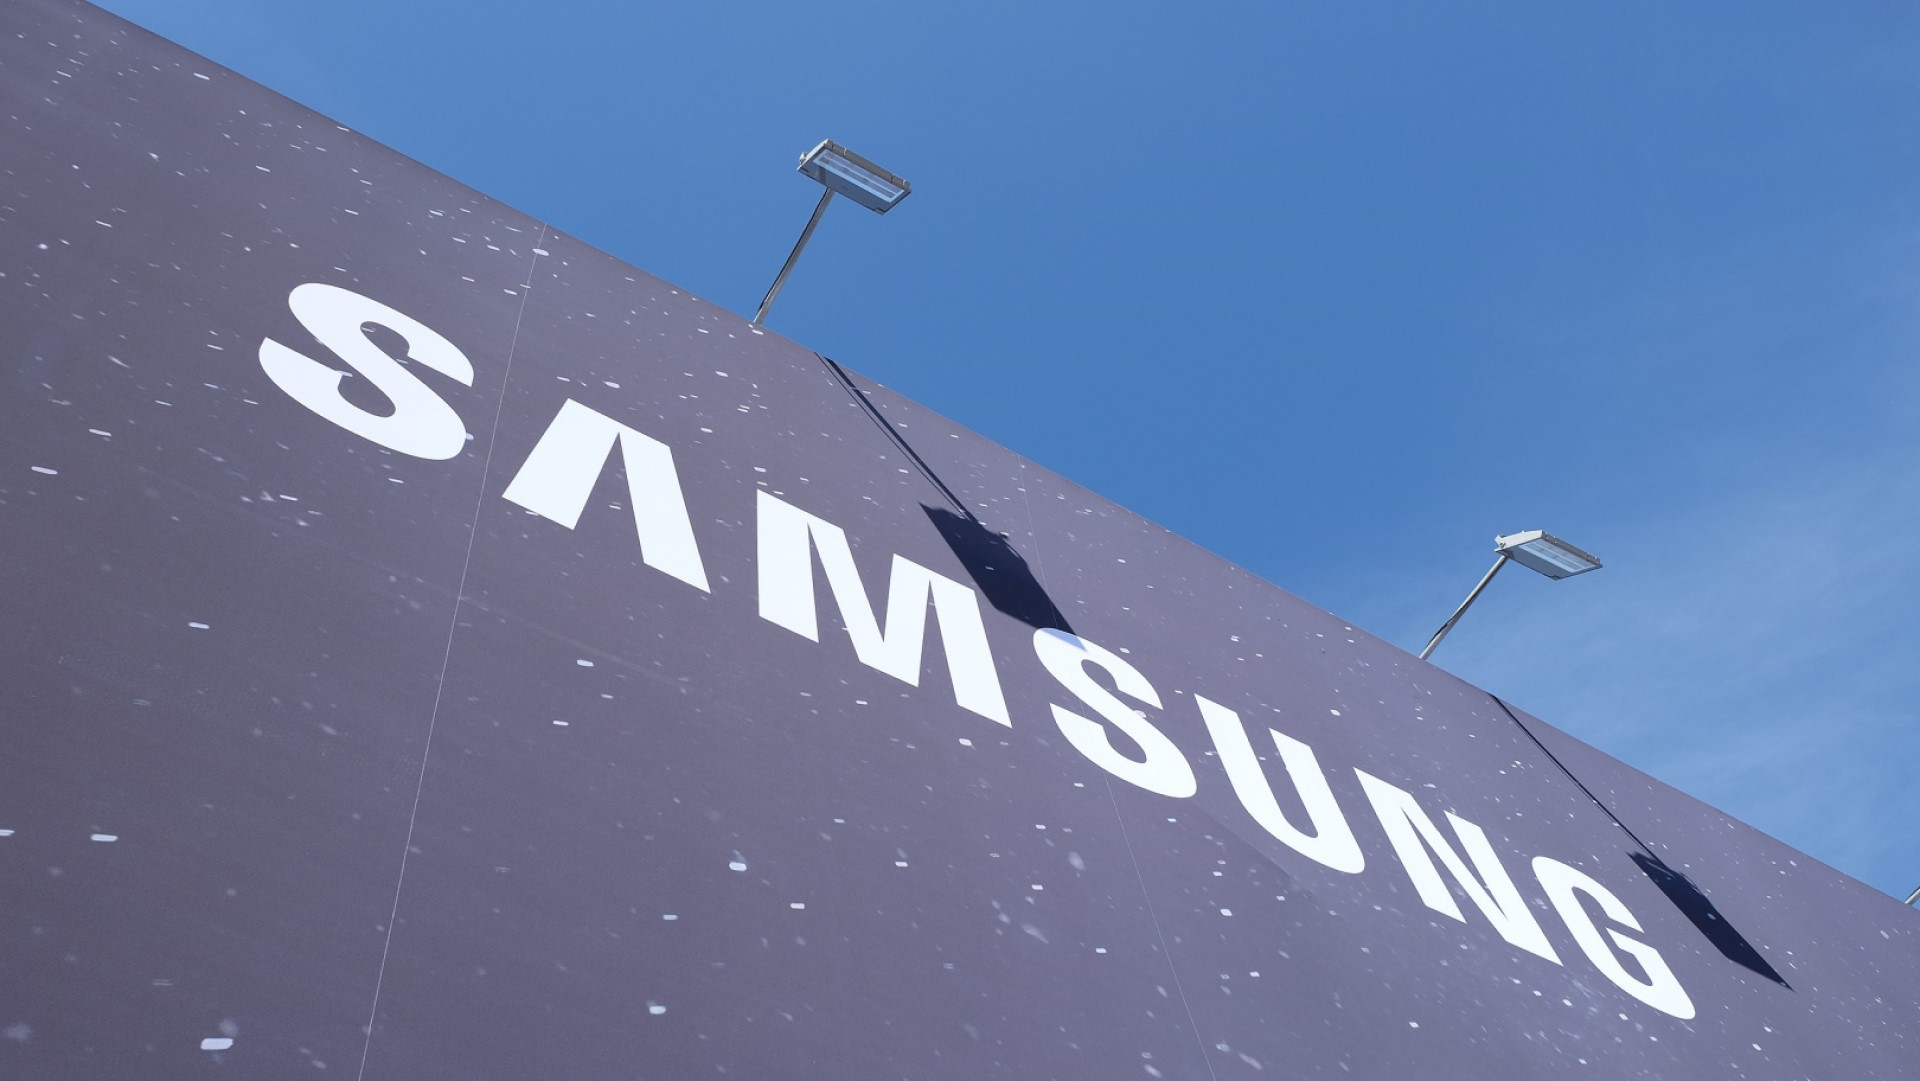 ศาลเกาหลีใต้ให้ประกันตัวอดีตผู้บริหาร Samsung ในคดีขโมยข้อมูลของบริษัทสร้างโรงงานชิปในจีน